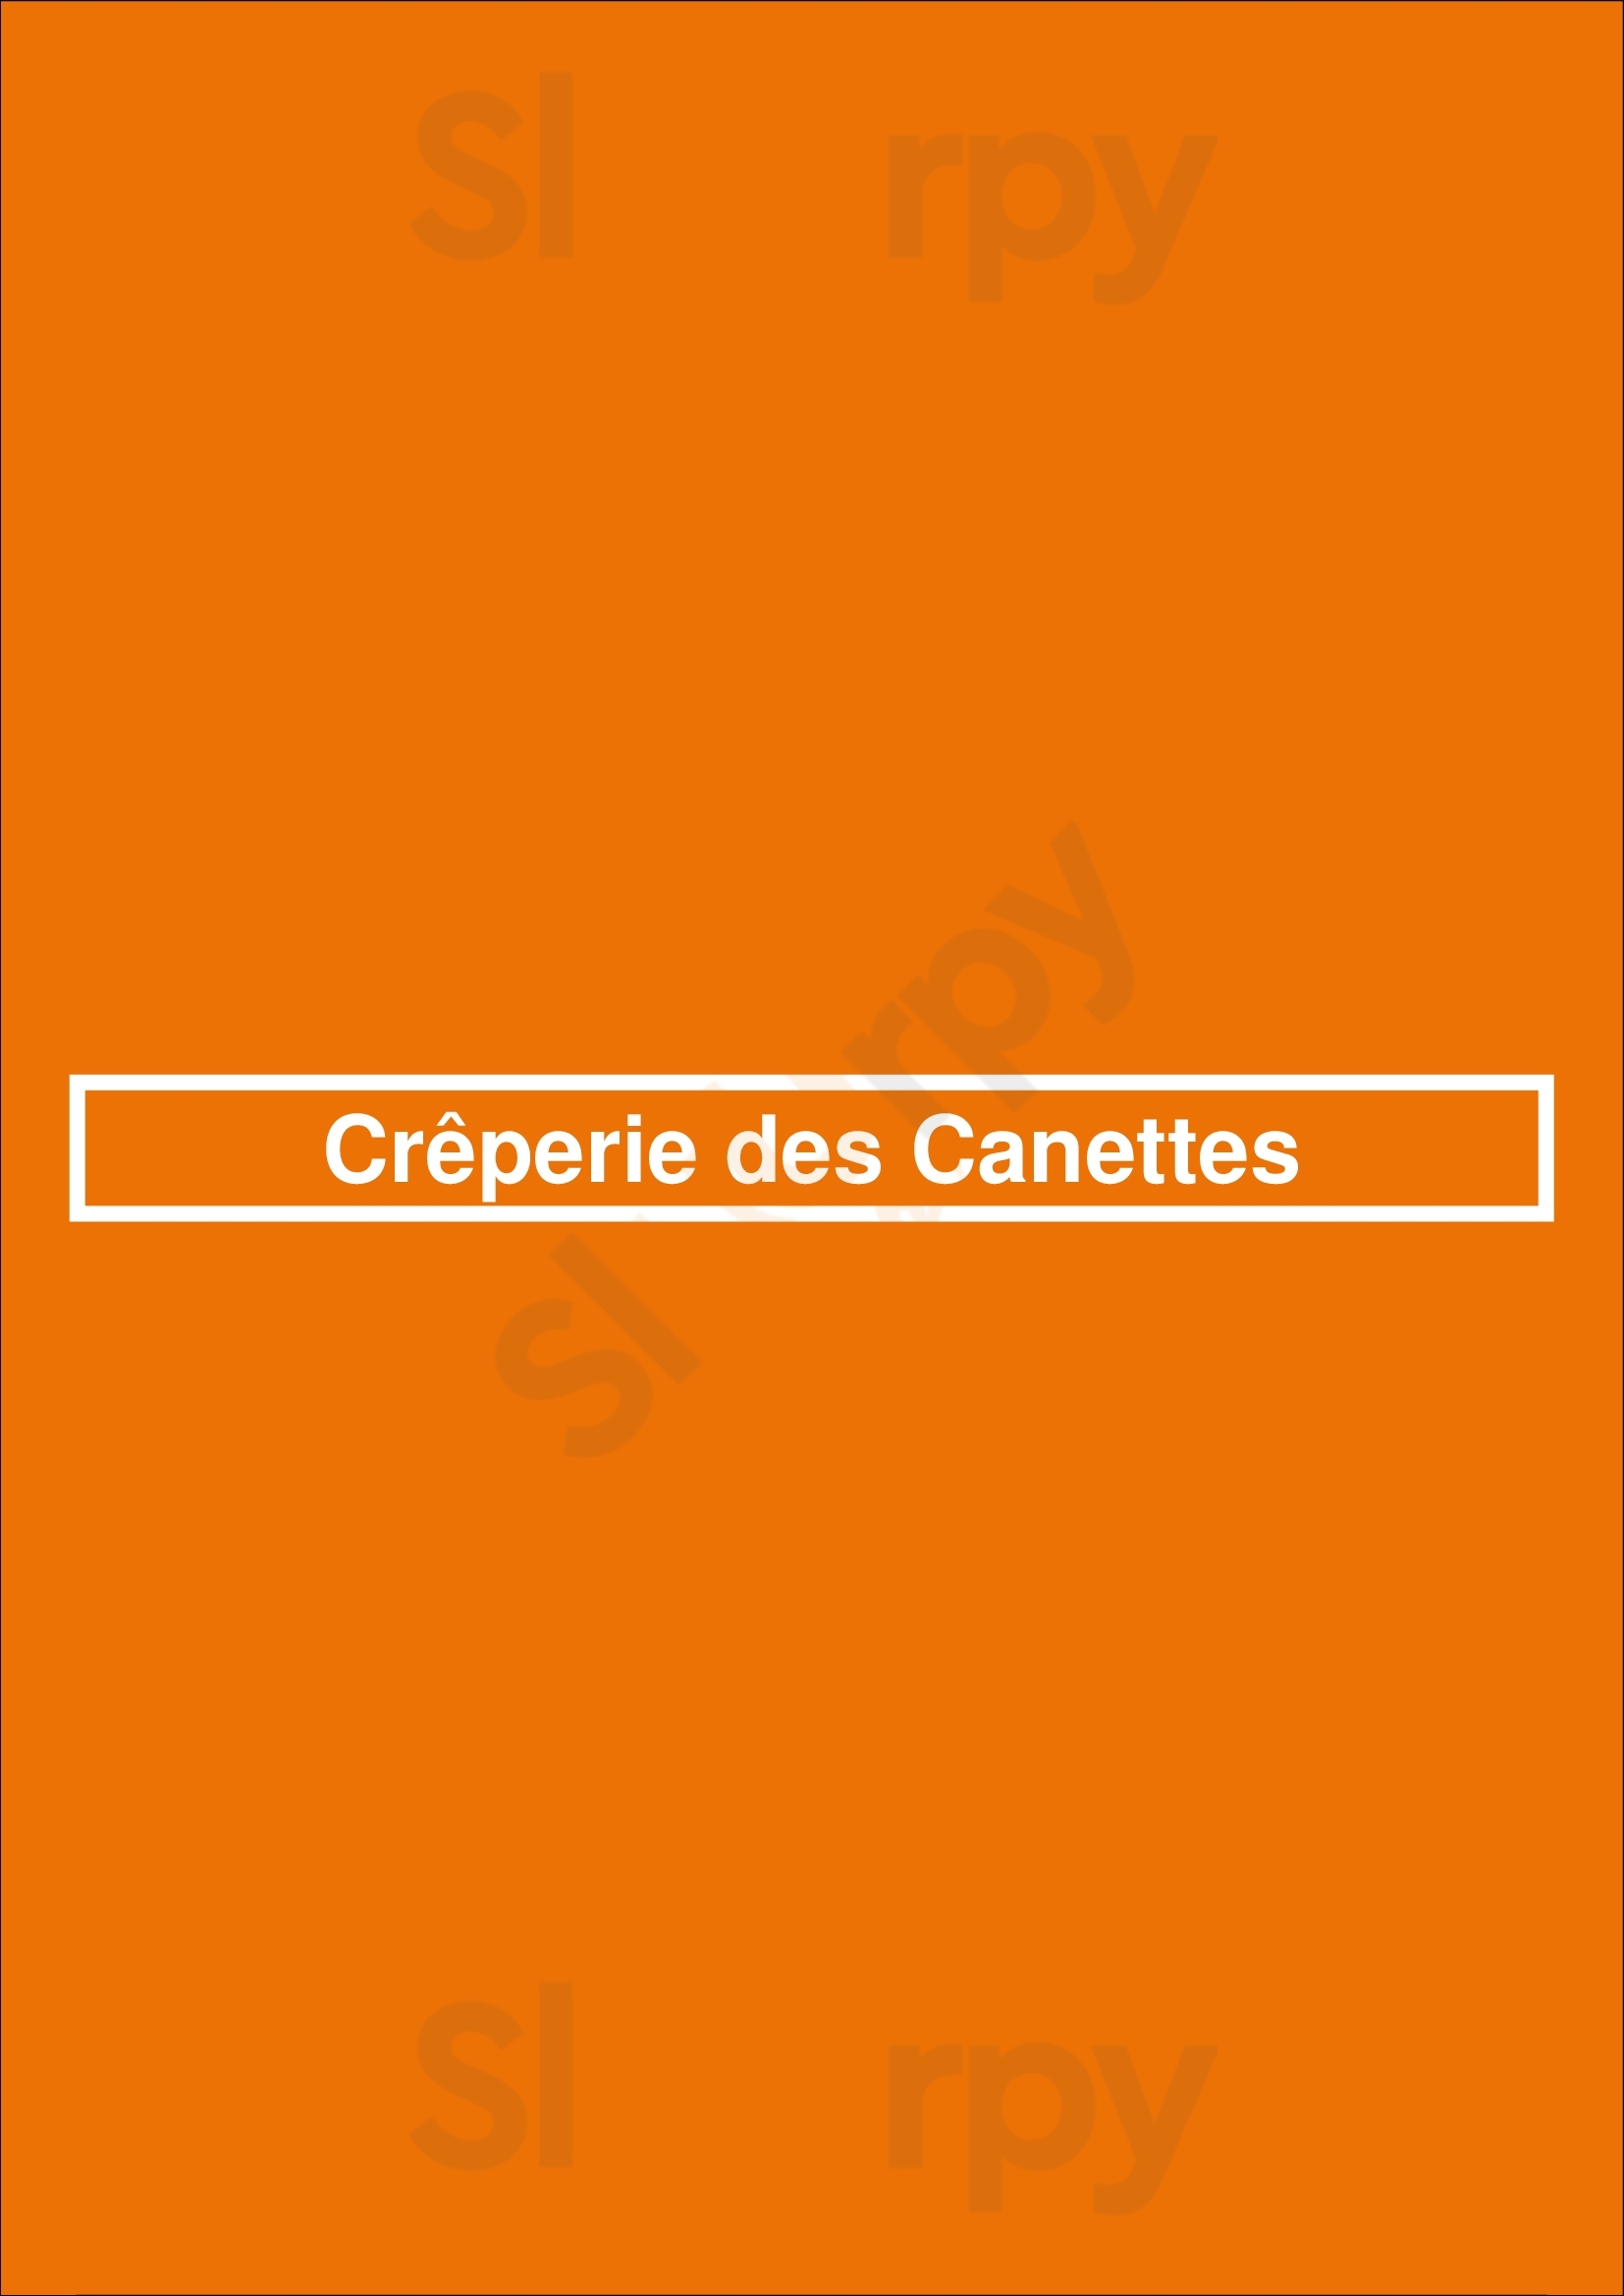 Crêperie Des Canettes Paris Menu - 1